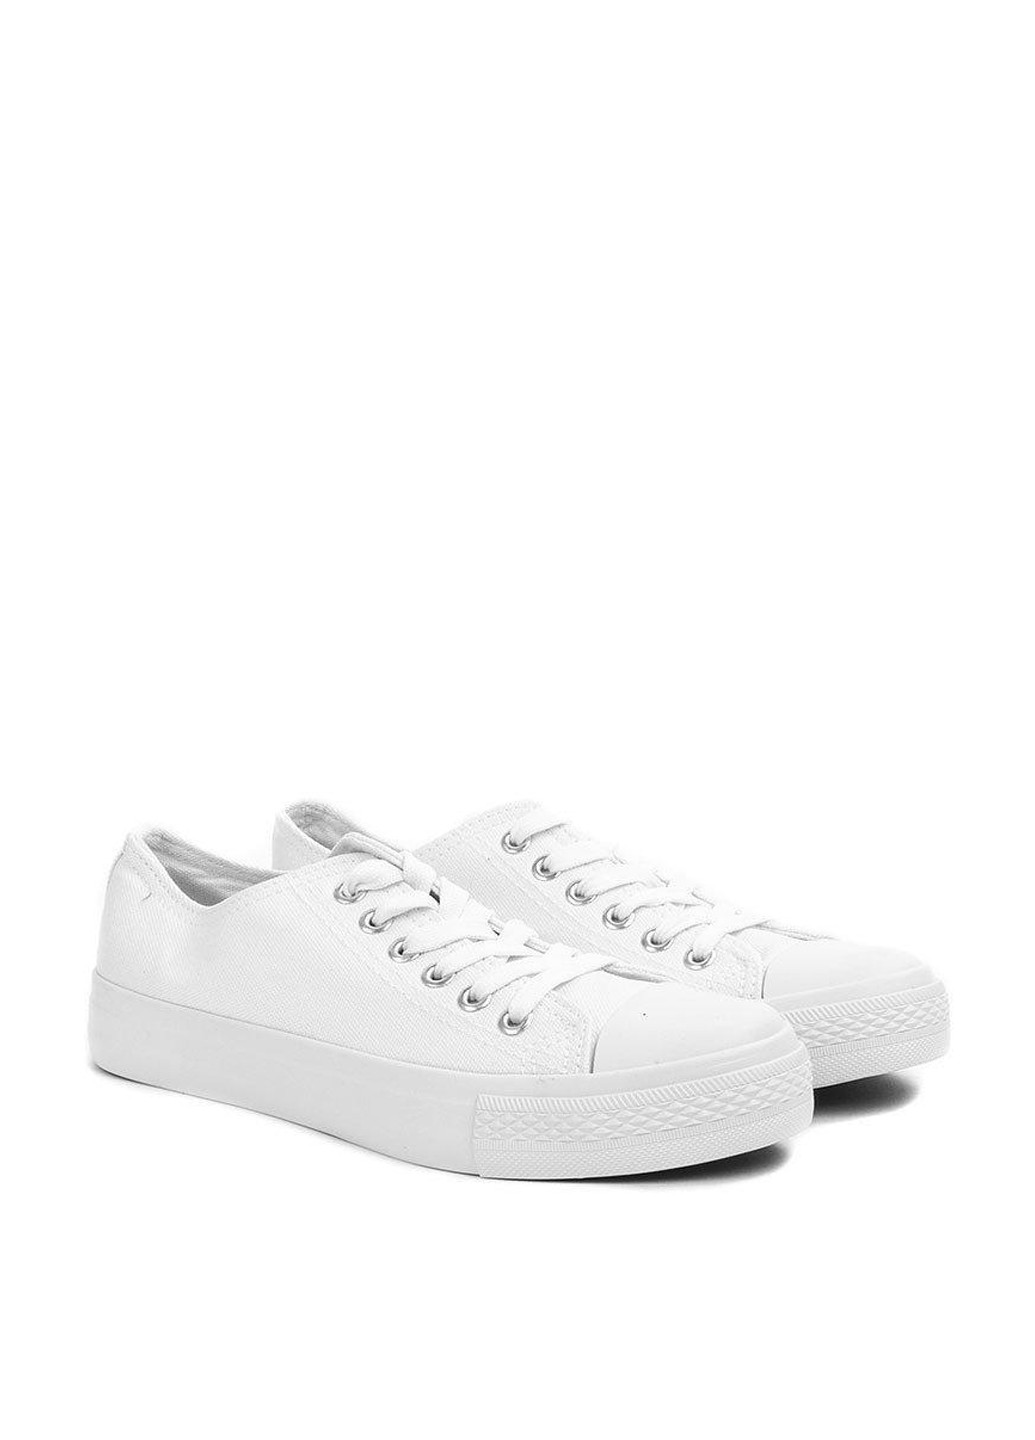 Белые кеды Top Shoes